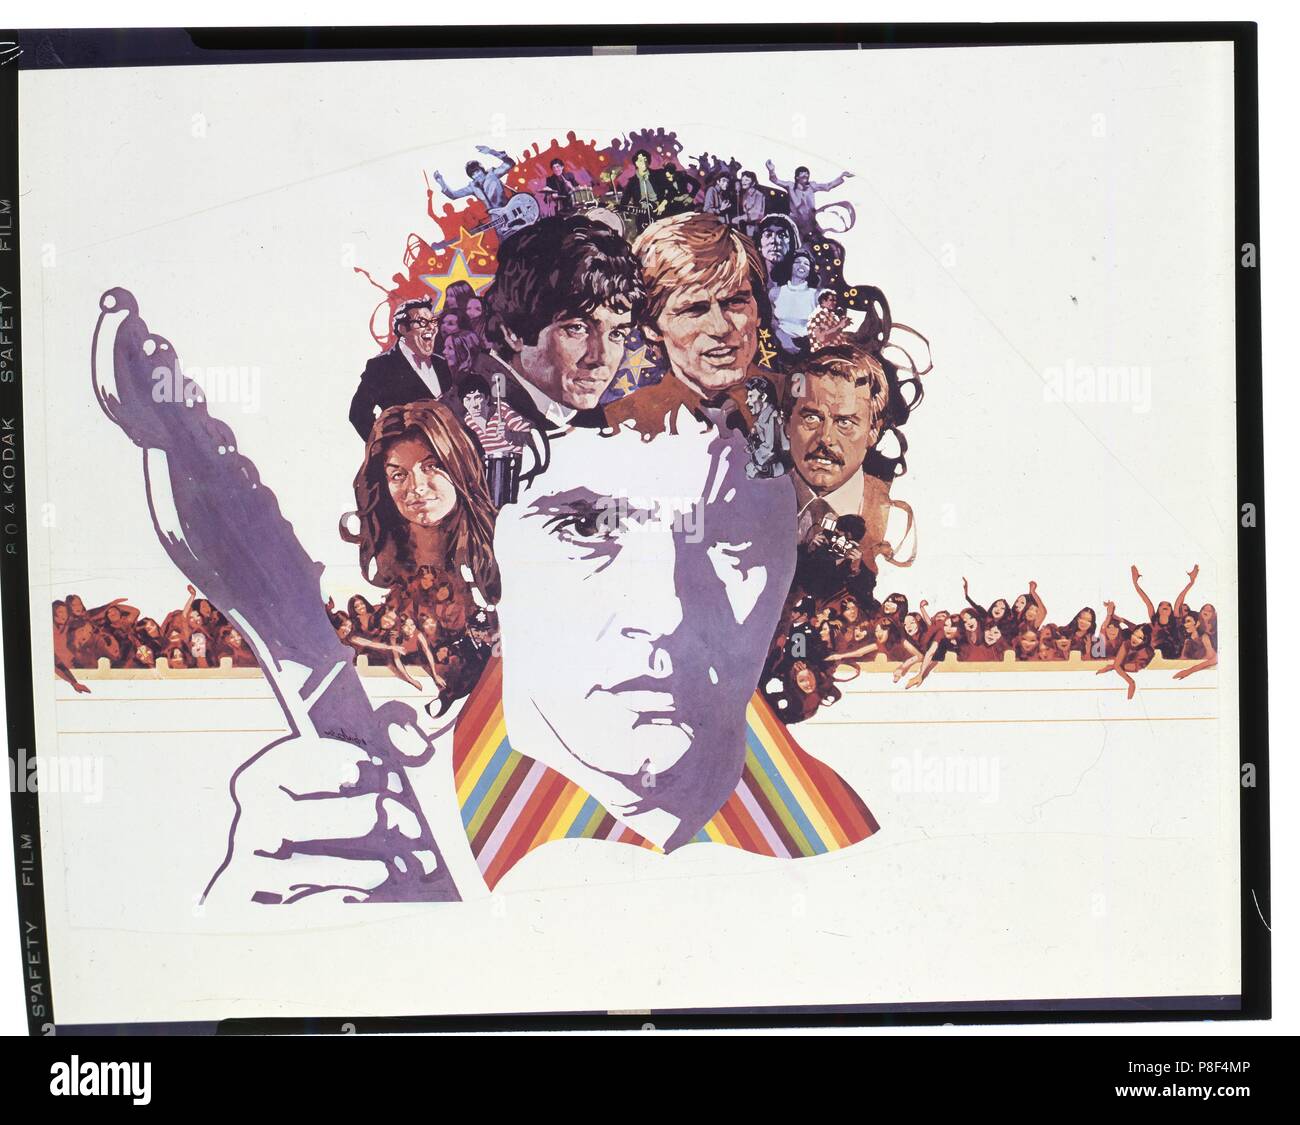 Stardust (1974) David Essex, Publicidad, información, póster de película Fecha: 1974 Foto de stock